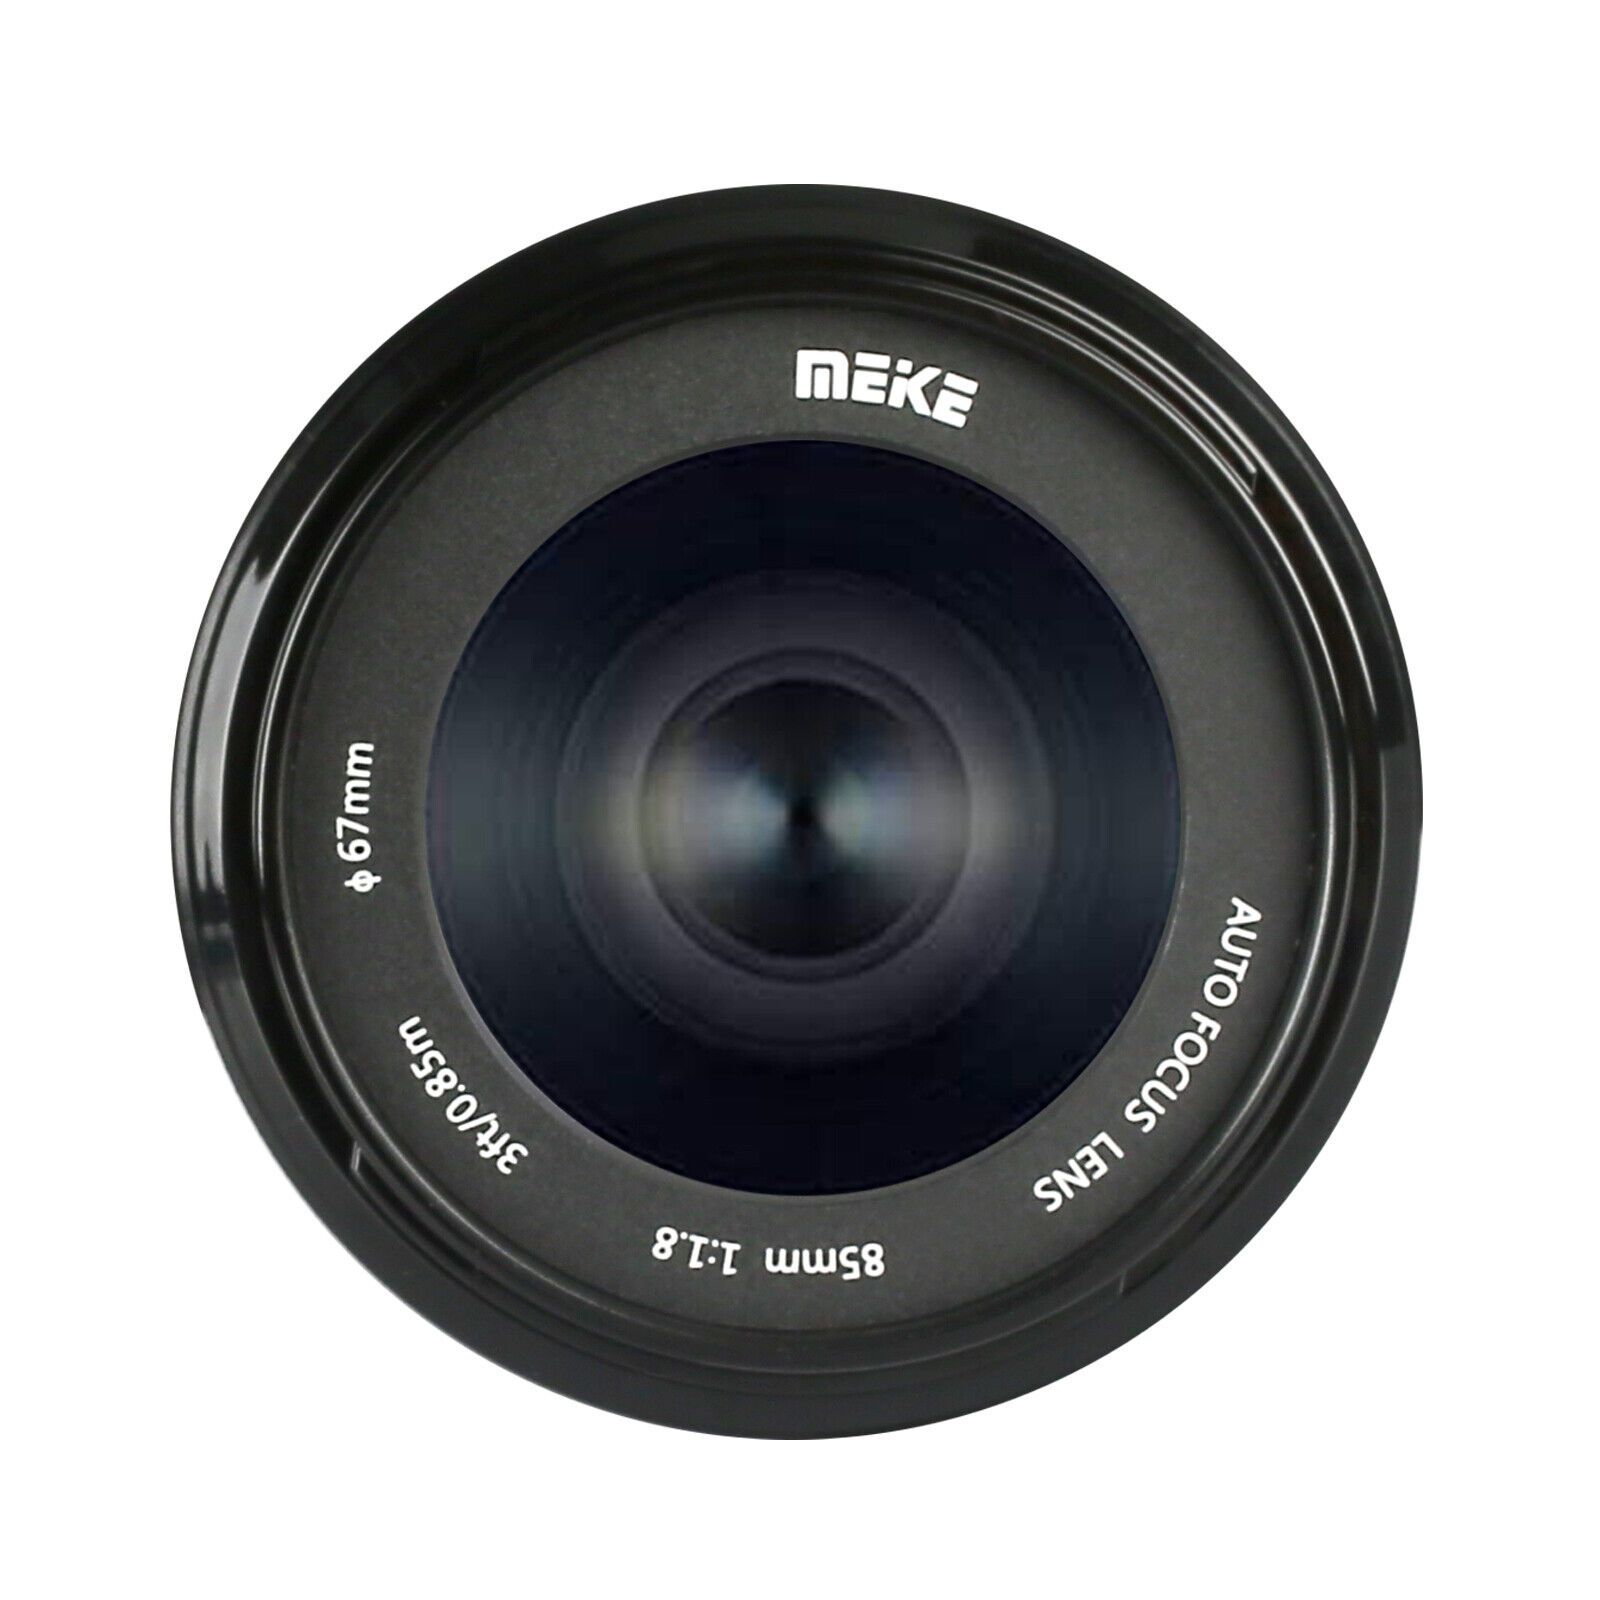 Nikon AF-S DX 18-140mm f/3.5-5.6G ED VR 